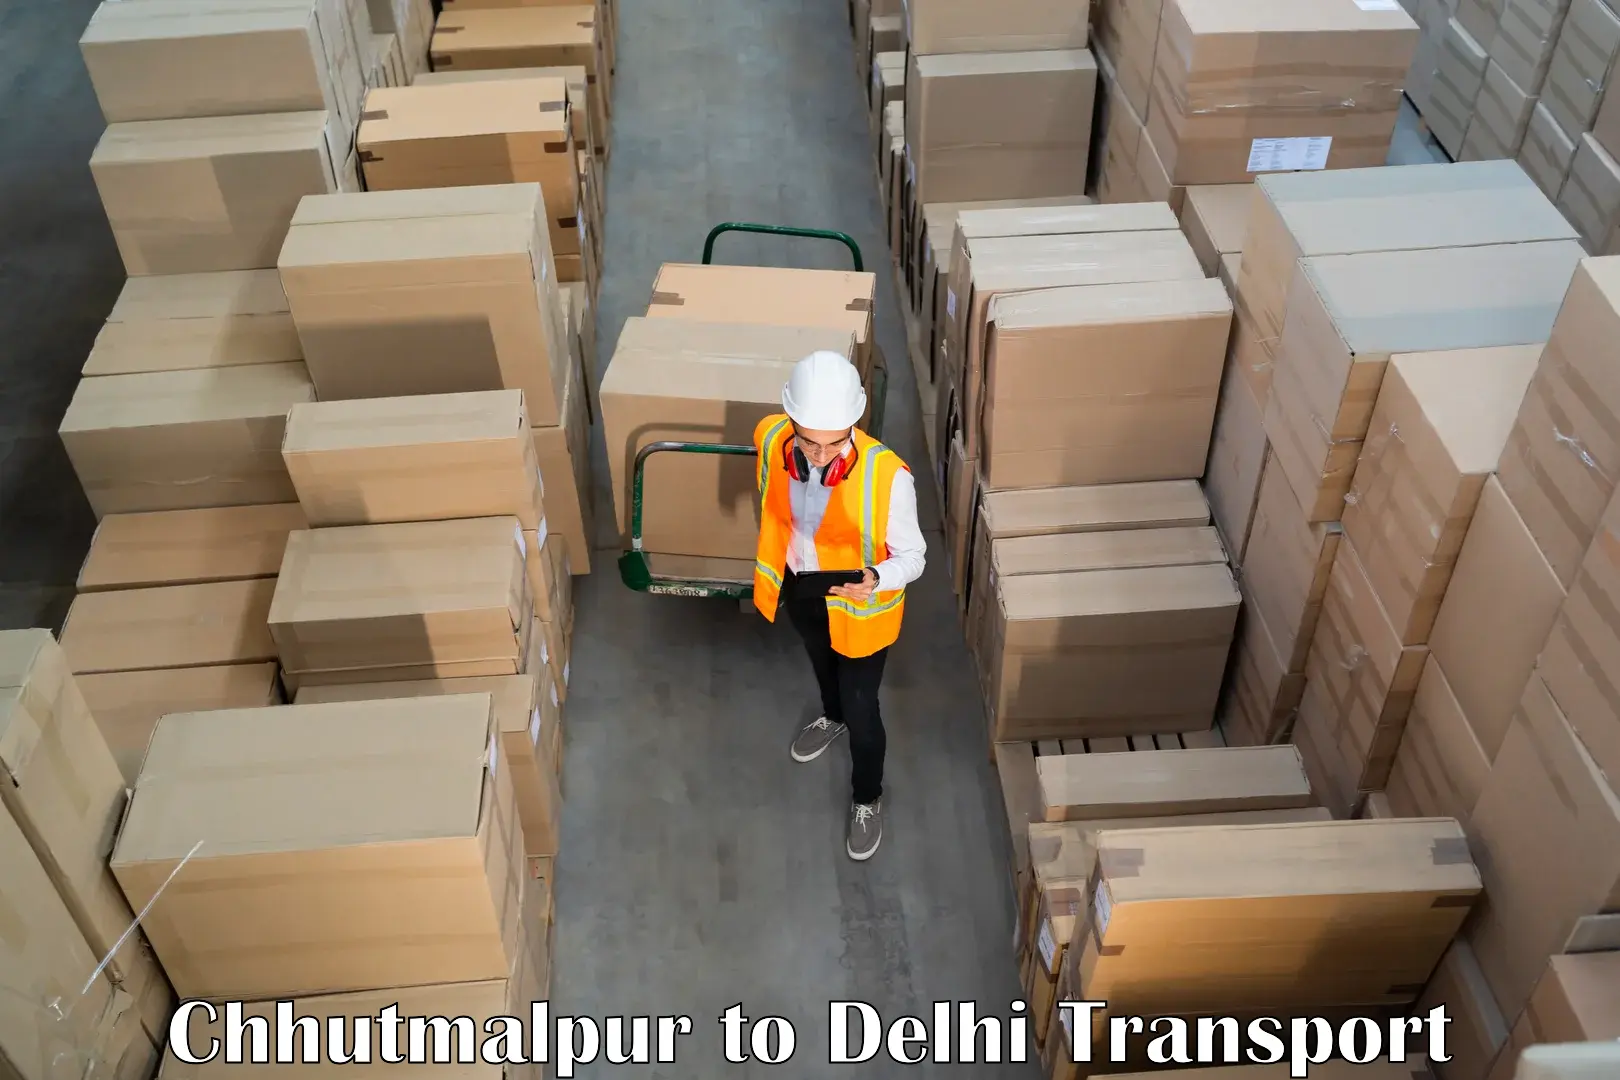 Nationwide transport services Chhutmalpur to IIT Delhi